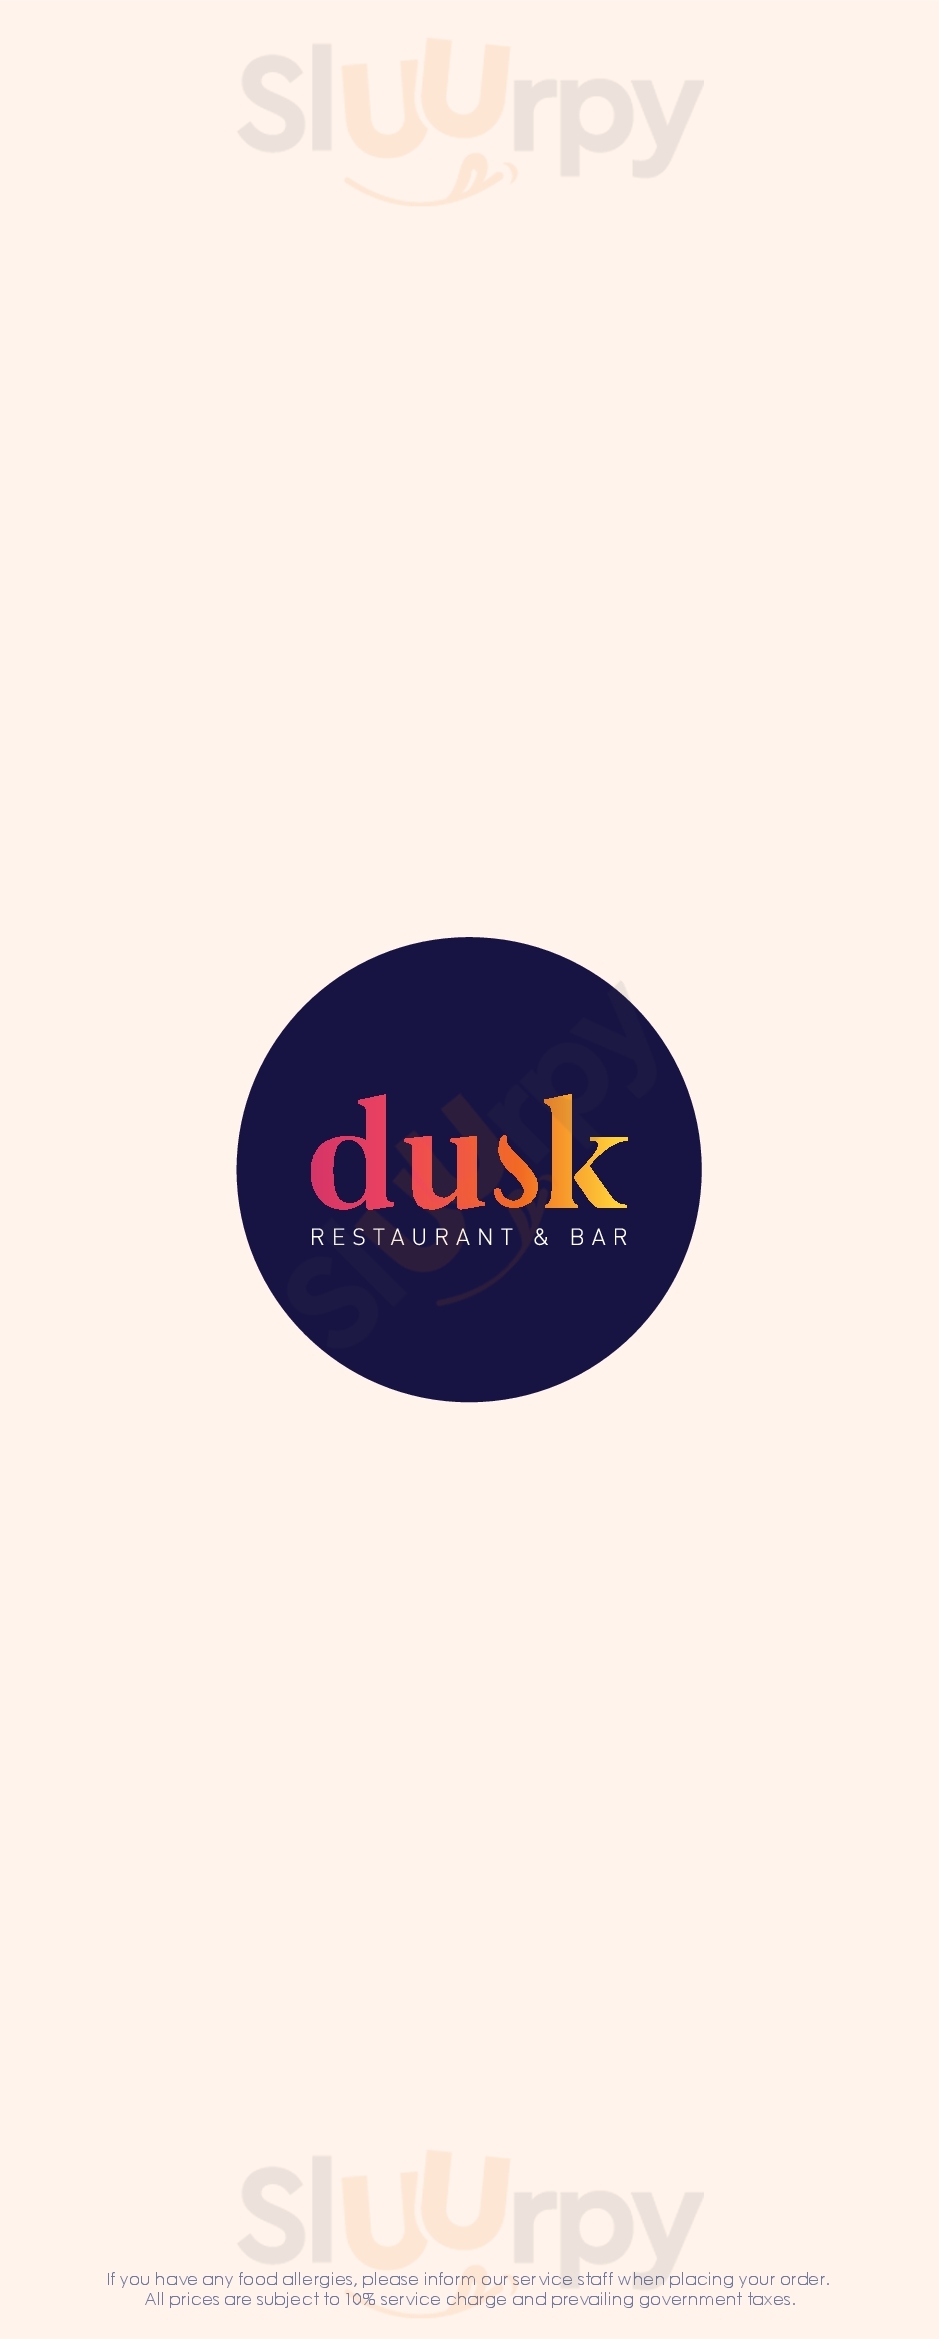 Dusk Restaurant & Bar Singapore Menu - 1